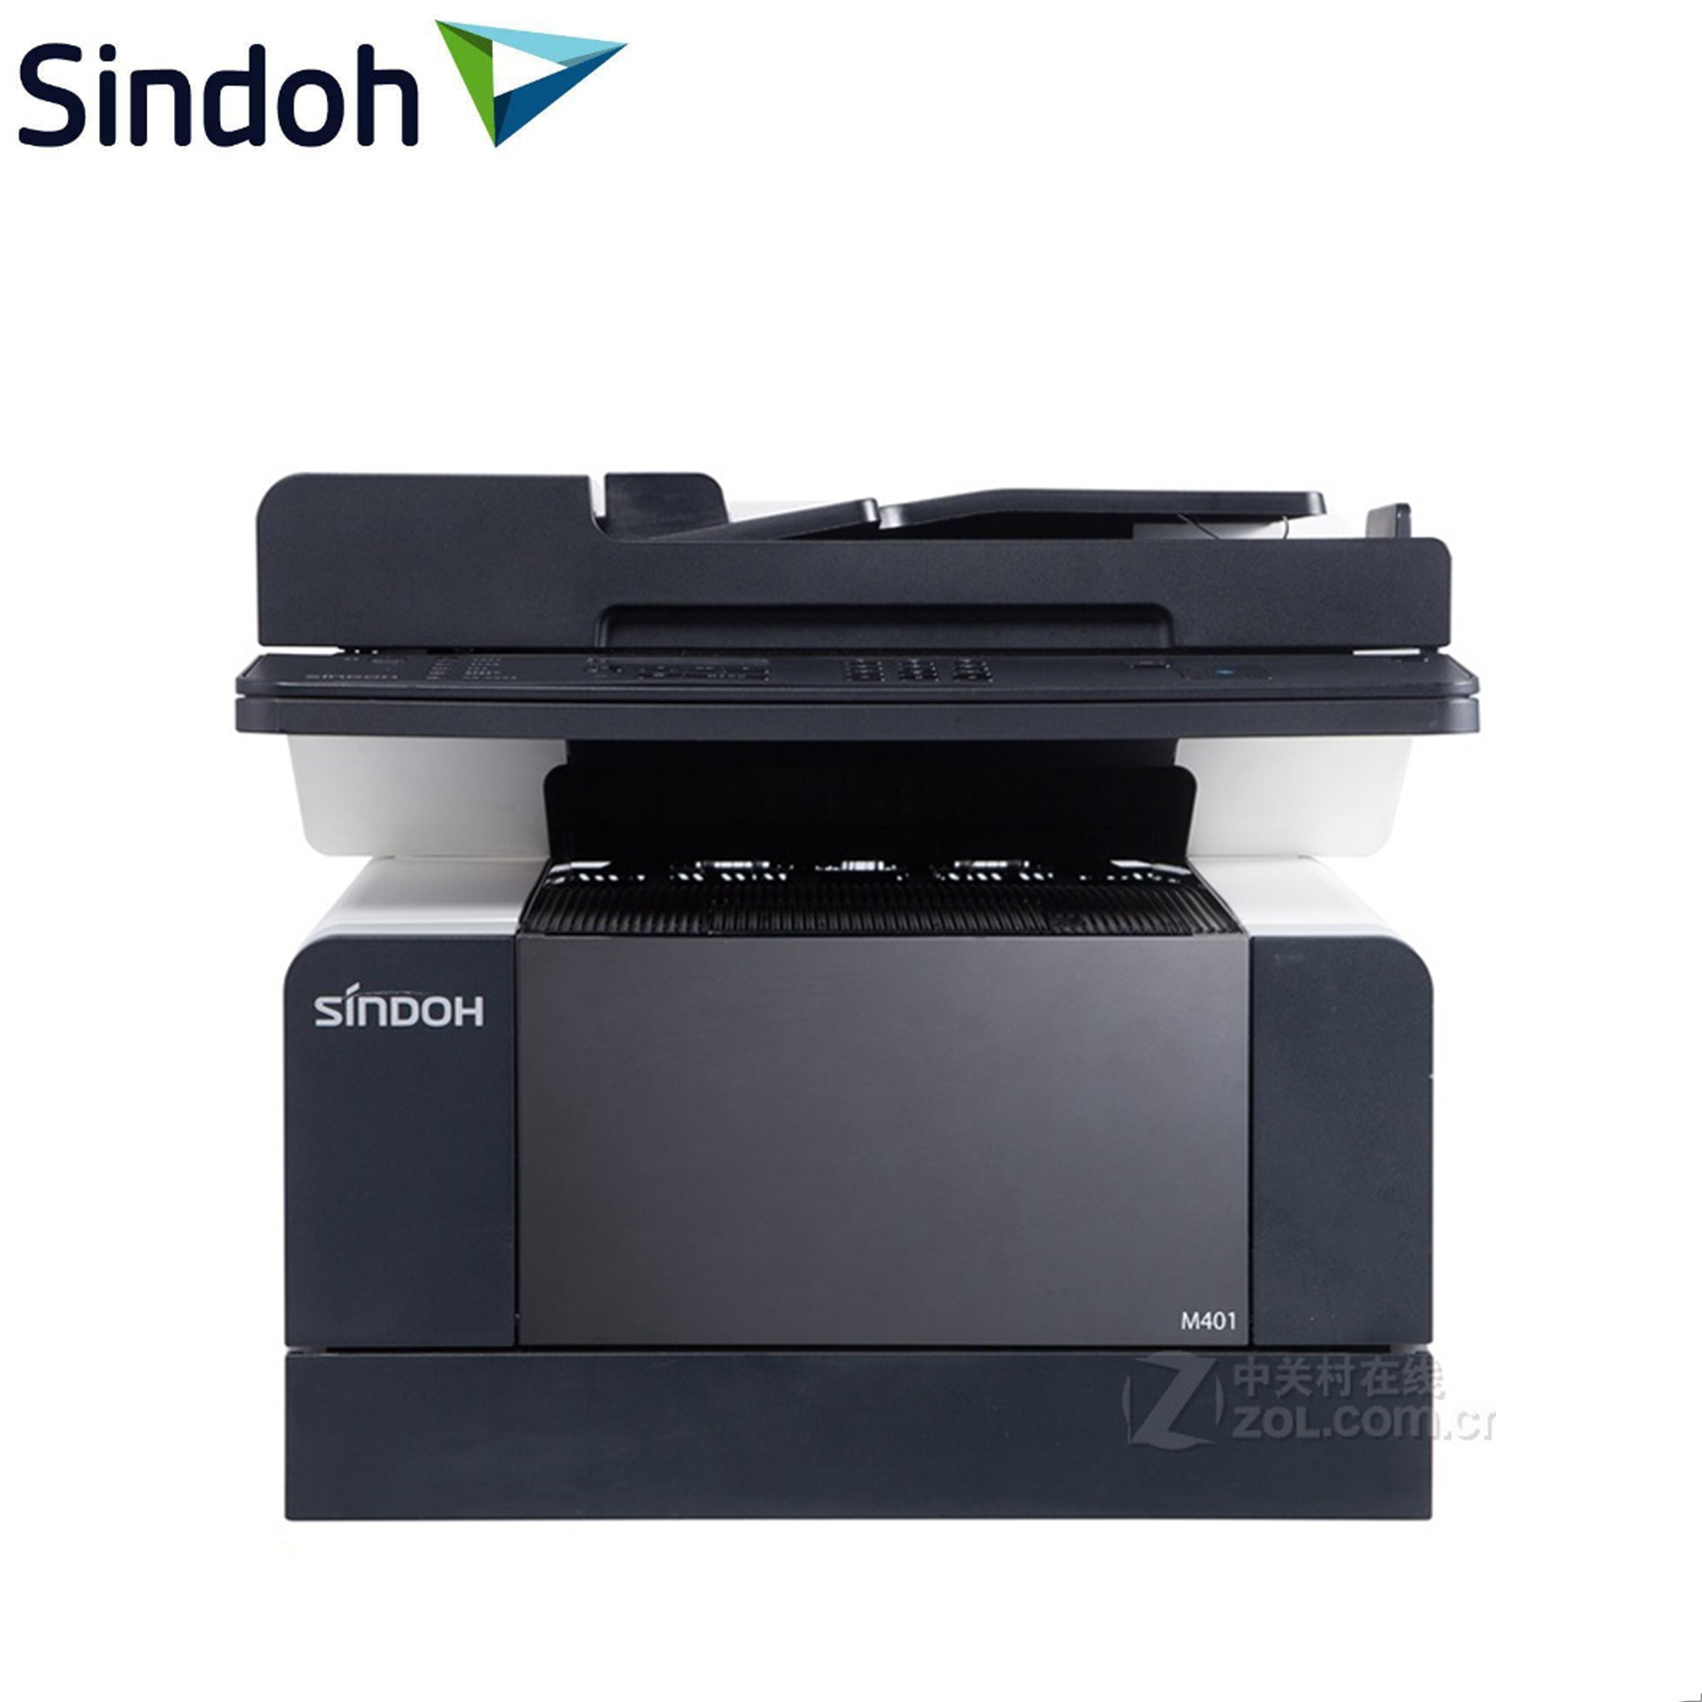 新都(SINDOH)M401黑白激光多功能一体机 手动双面支持有线网络打印